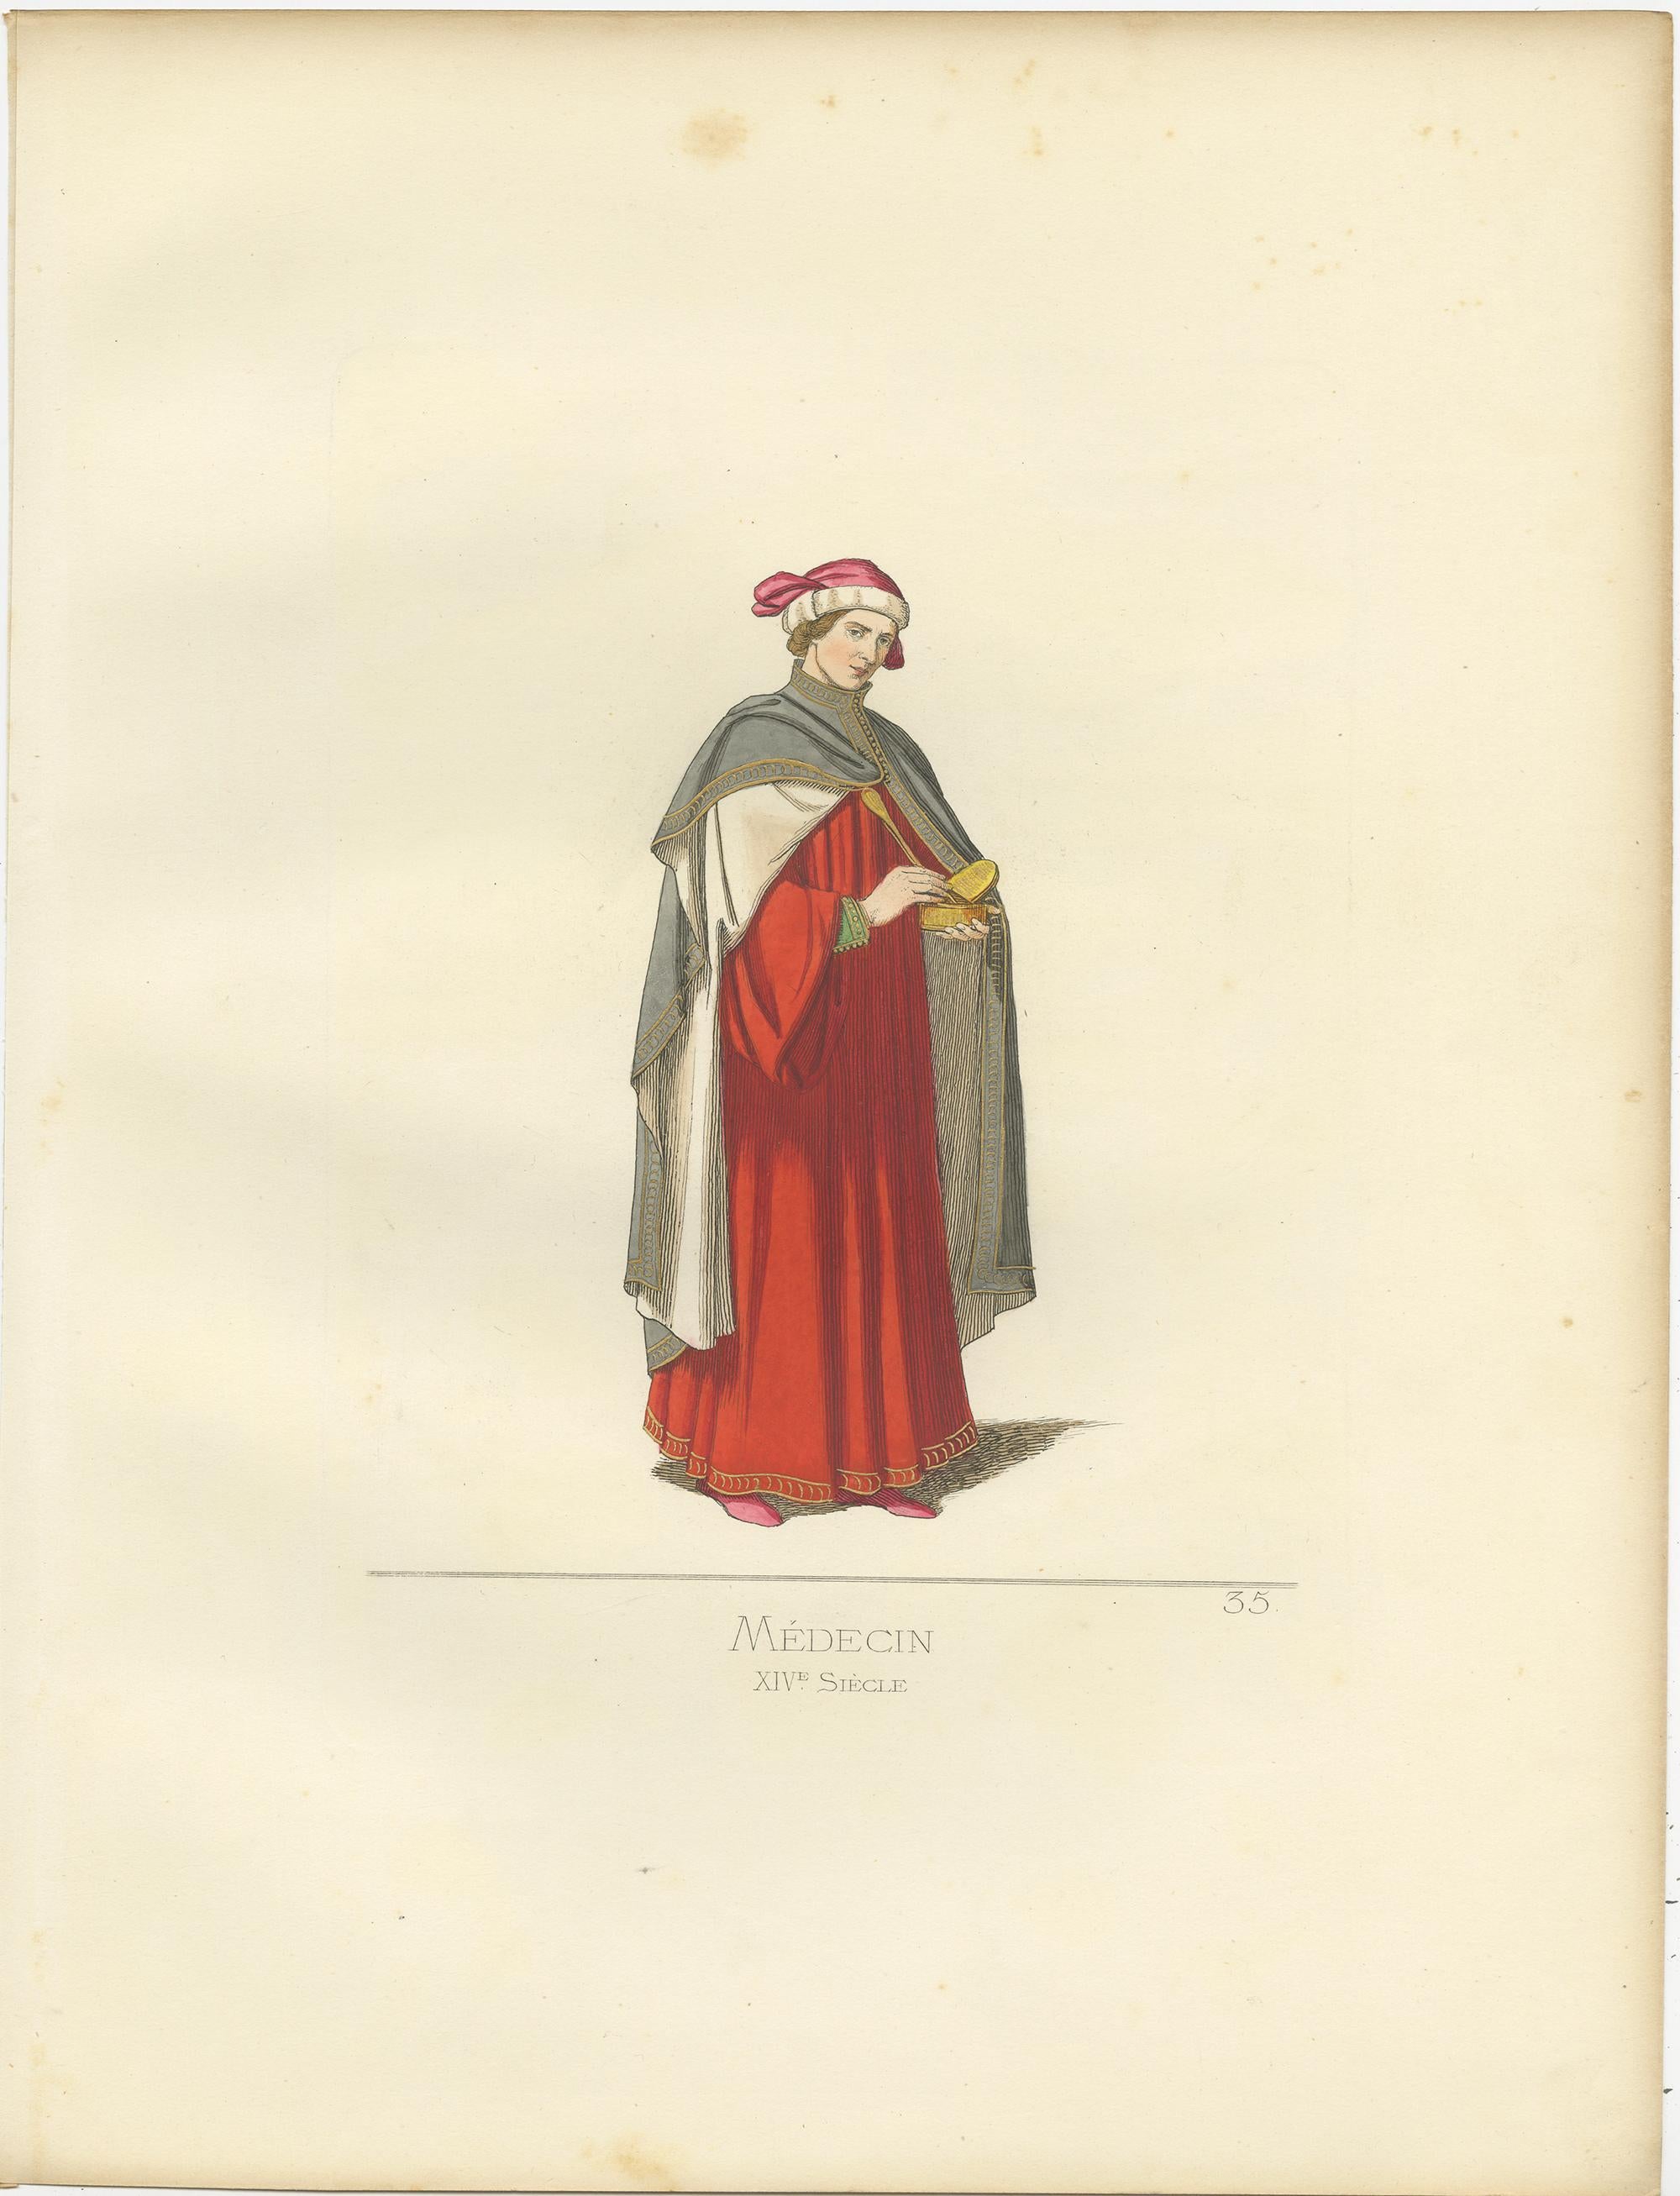 Antique print titled ‘Medecin, XIVe Siecle.’ Original antique print of a physician. This print originates from 'Costumes historiques de femmes du XIII, XIV et XV siècle' by C. Bonnard. Published 1860.